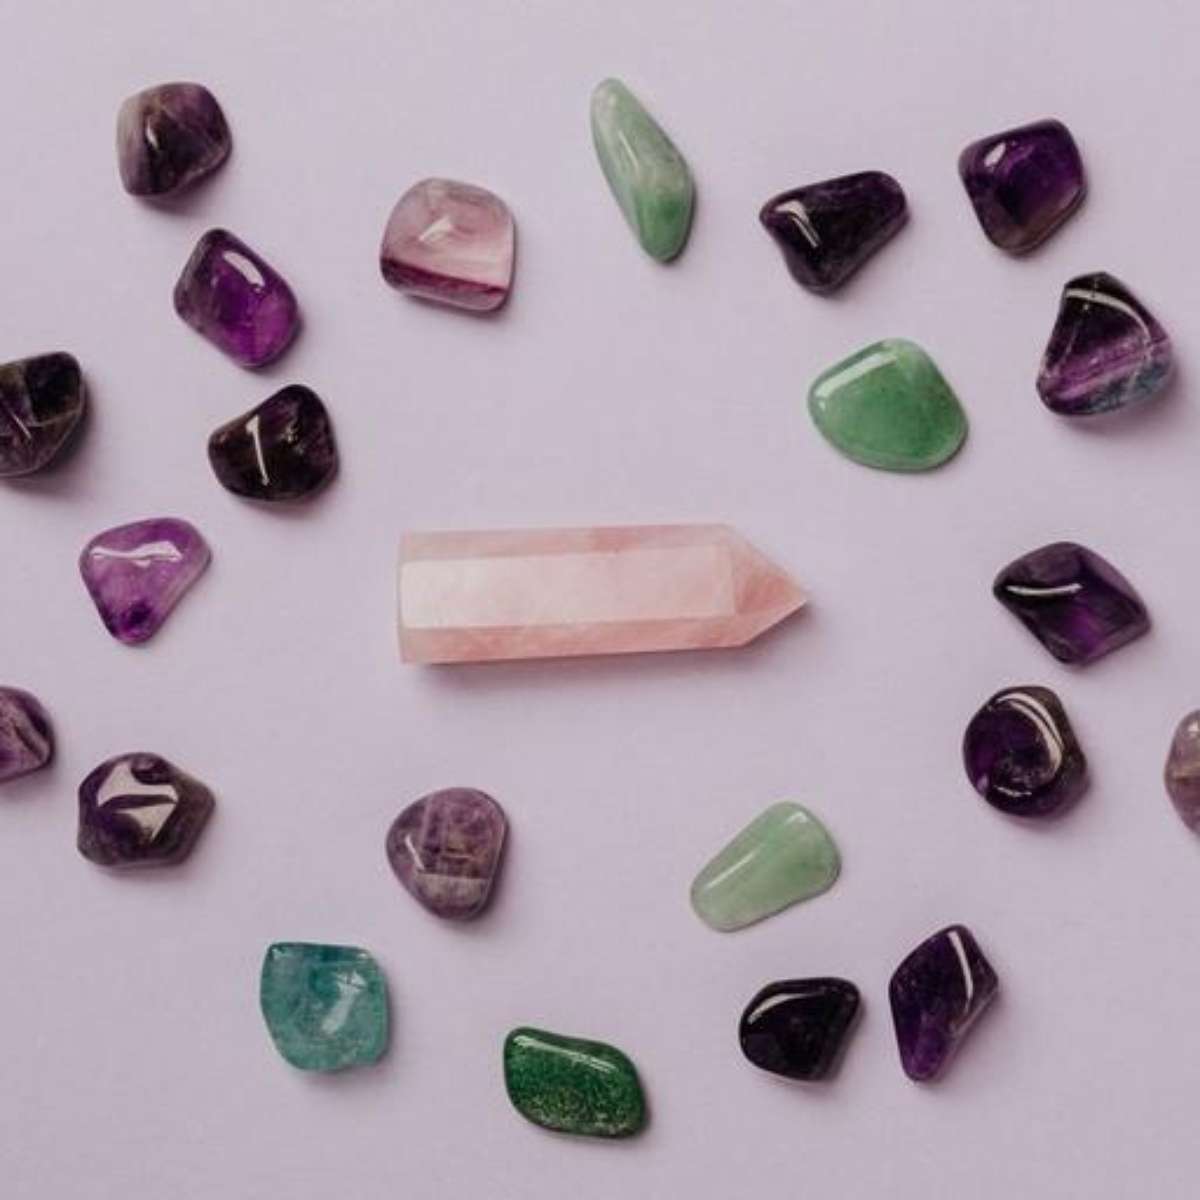 5 pedras semi preciosas para trazer proteção, energia e paz